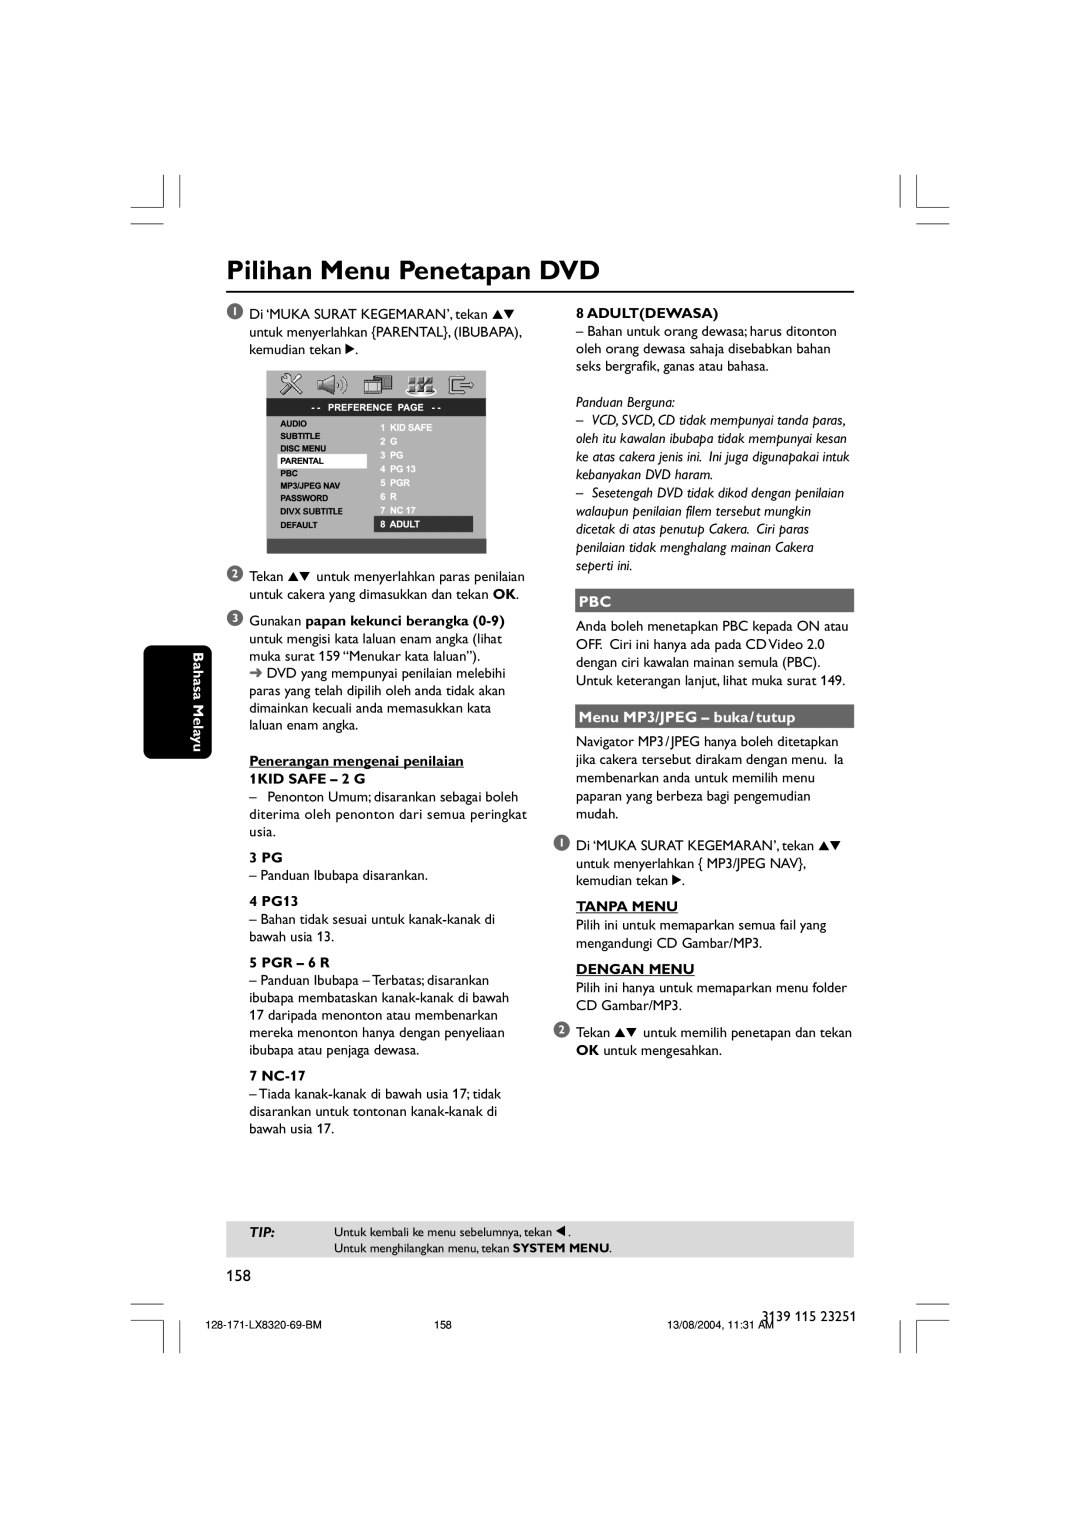 Philips LX8320SA Pilihan Menu Penetapan DVD, Bahasa Melayu, Penerangan mengenai penilaian 1KID SAFE - 2 G, 3 PG, 4 PG13 